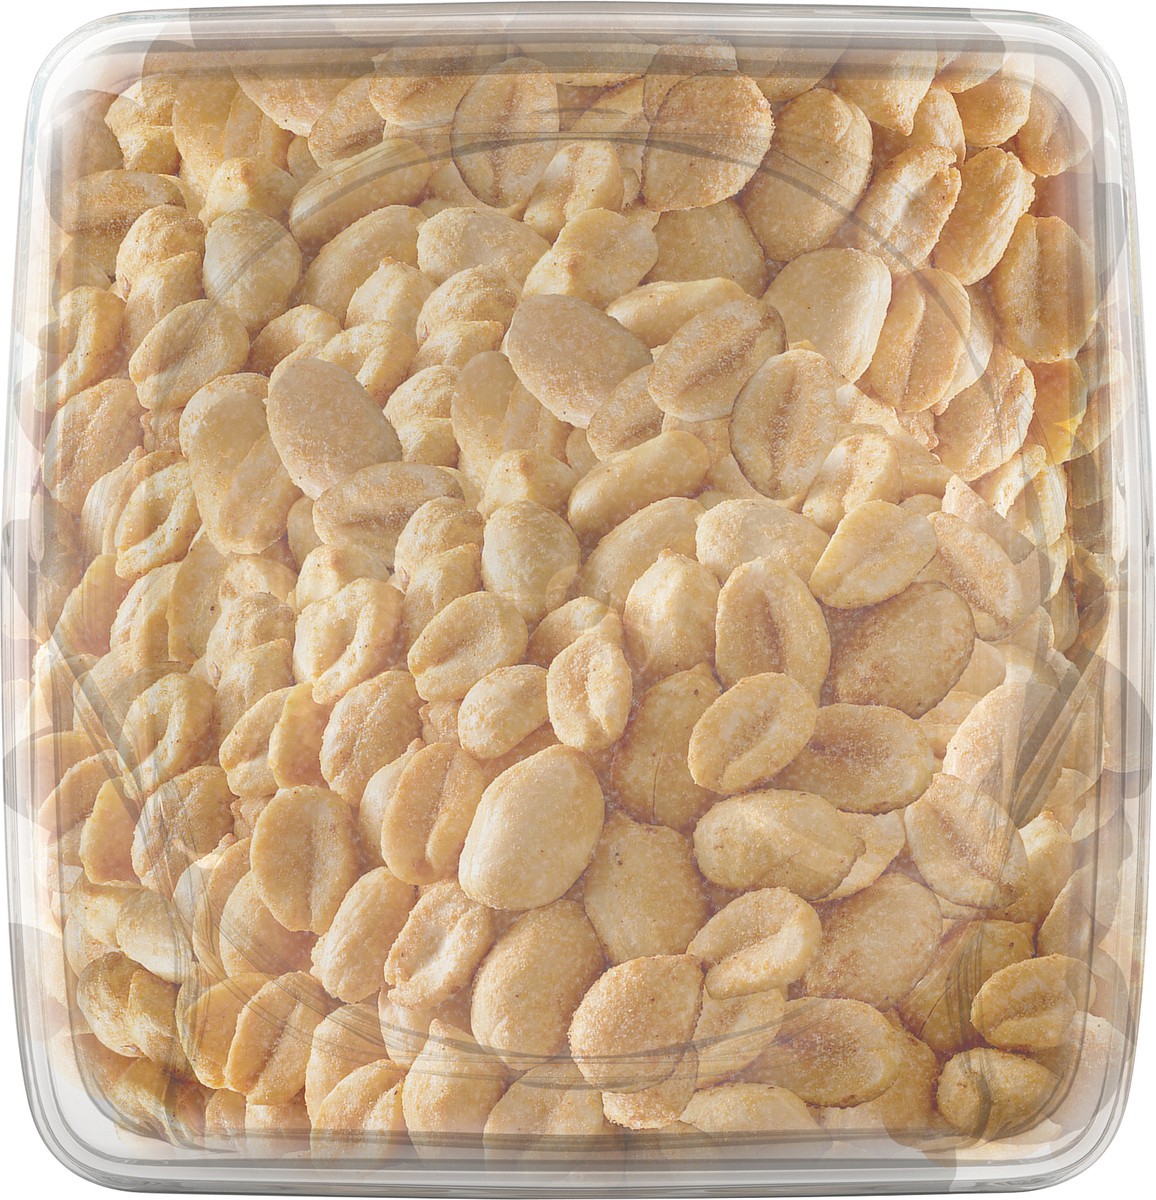 slide 4 of 9, Planters Dry Roasted Peanuts, 34.5 oz